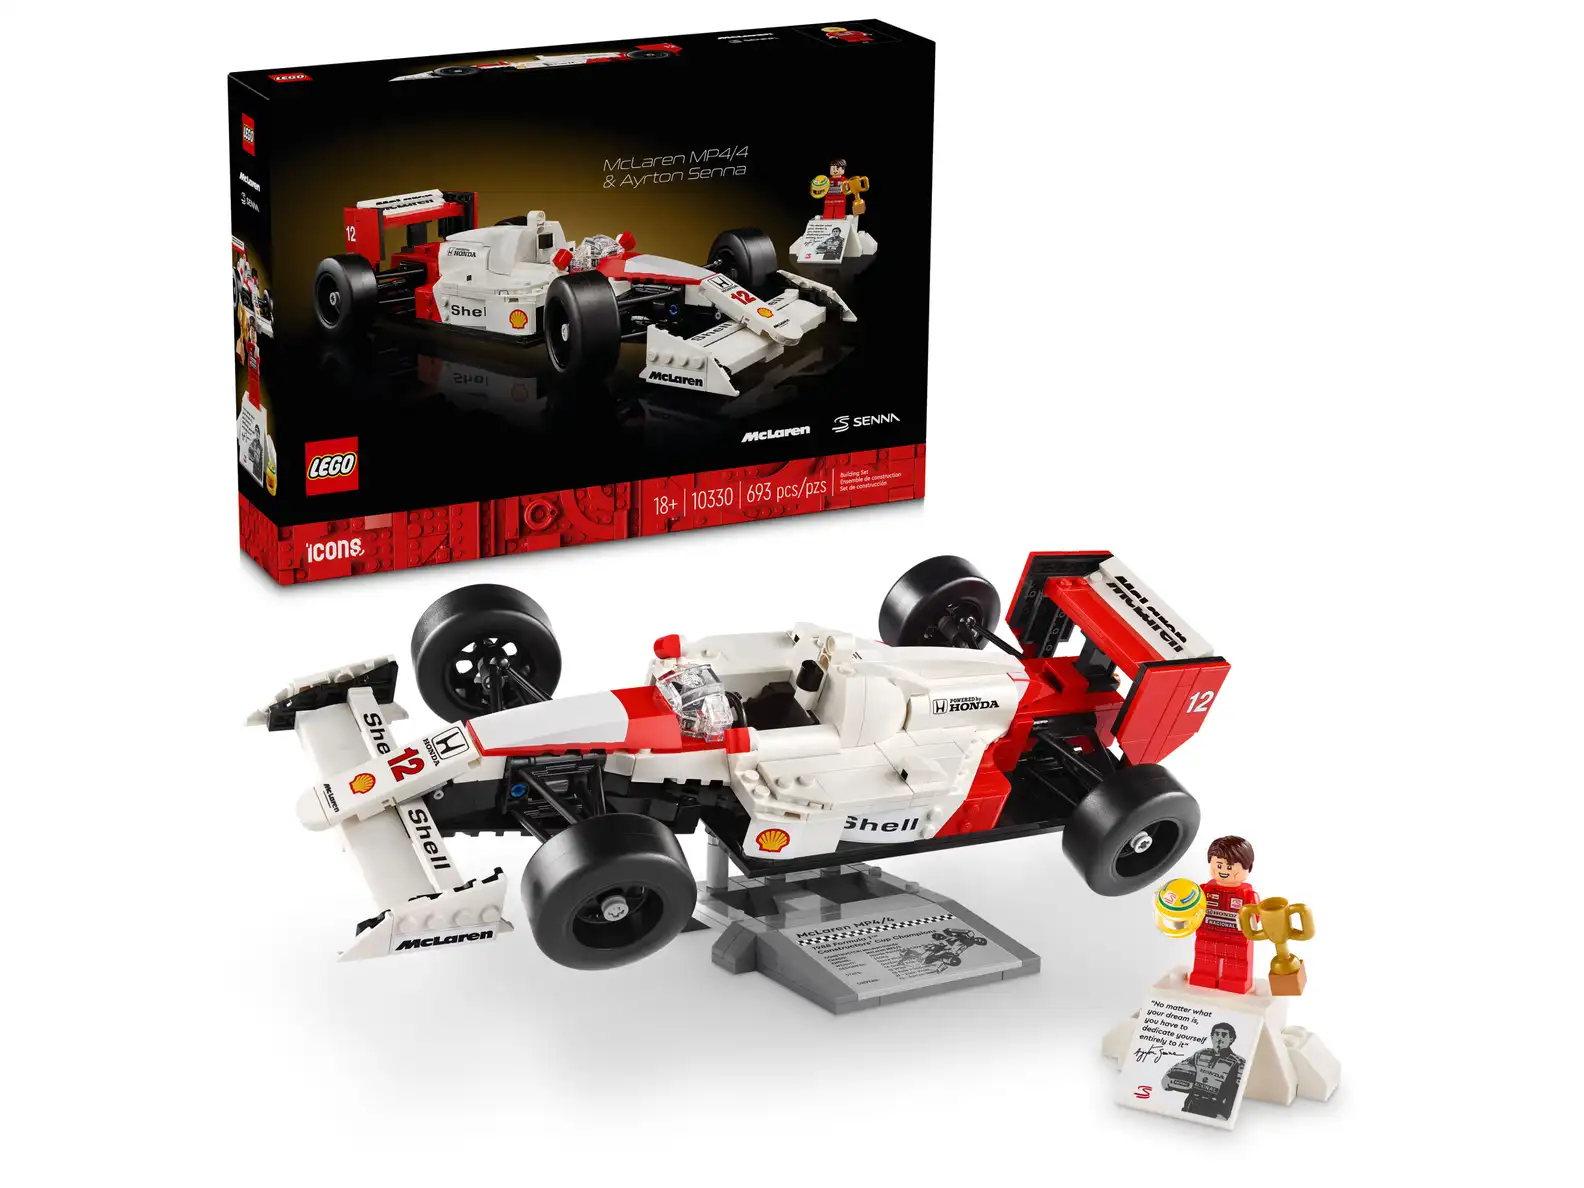 LEGO 10330 McLaren MP4/4 & Ayrton Senna (สินค้าซื้อแล้วไม่รับเปลี่ยนคืน)